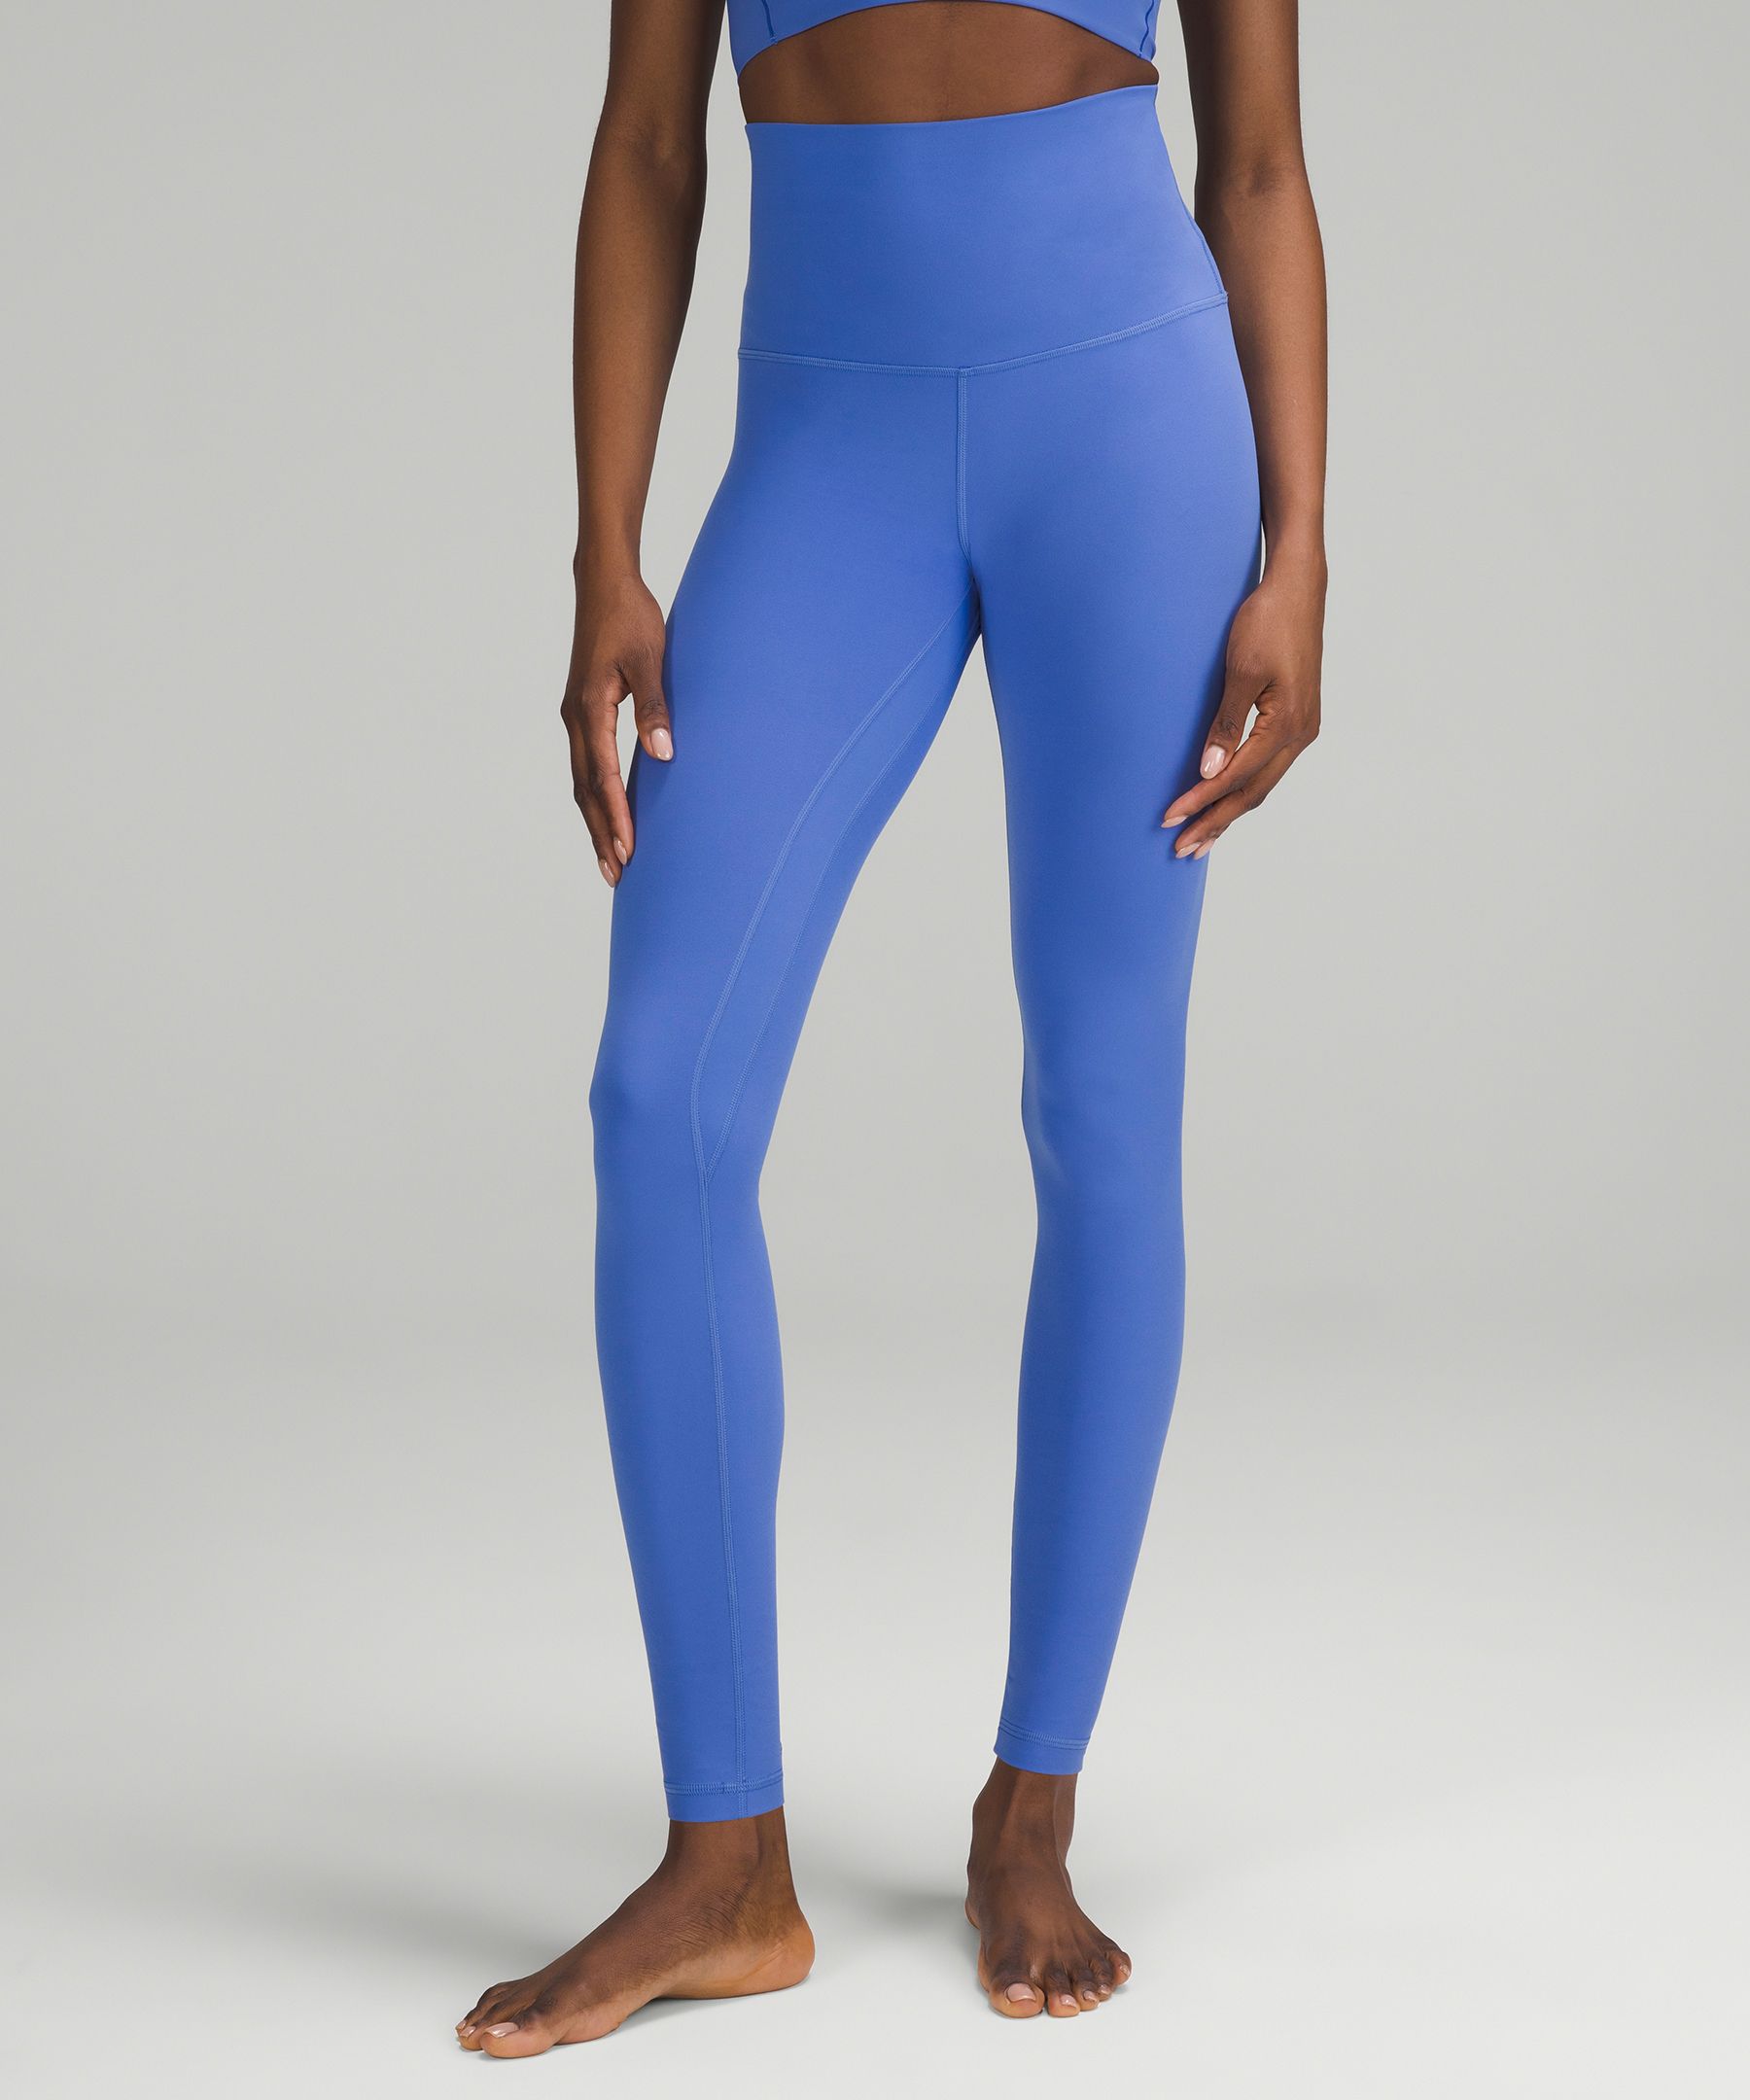 Lululemon Align™ Super-High-Rise Pant 28, Women's Leggings/Tights